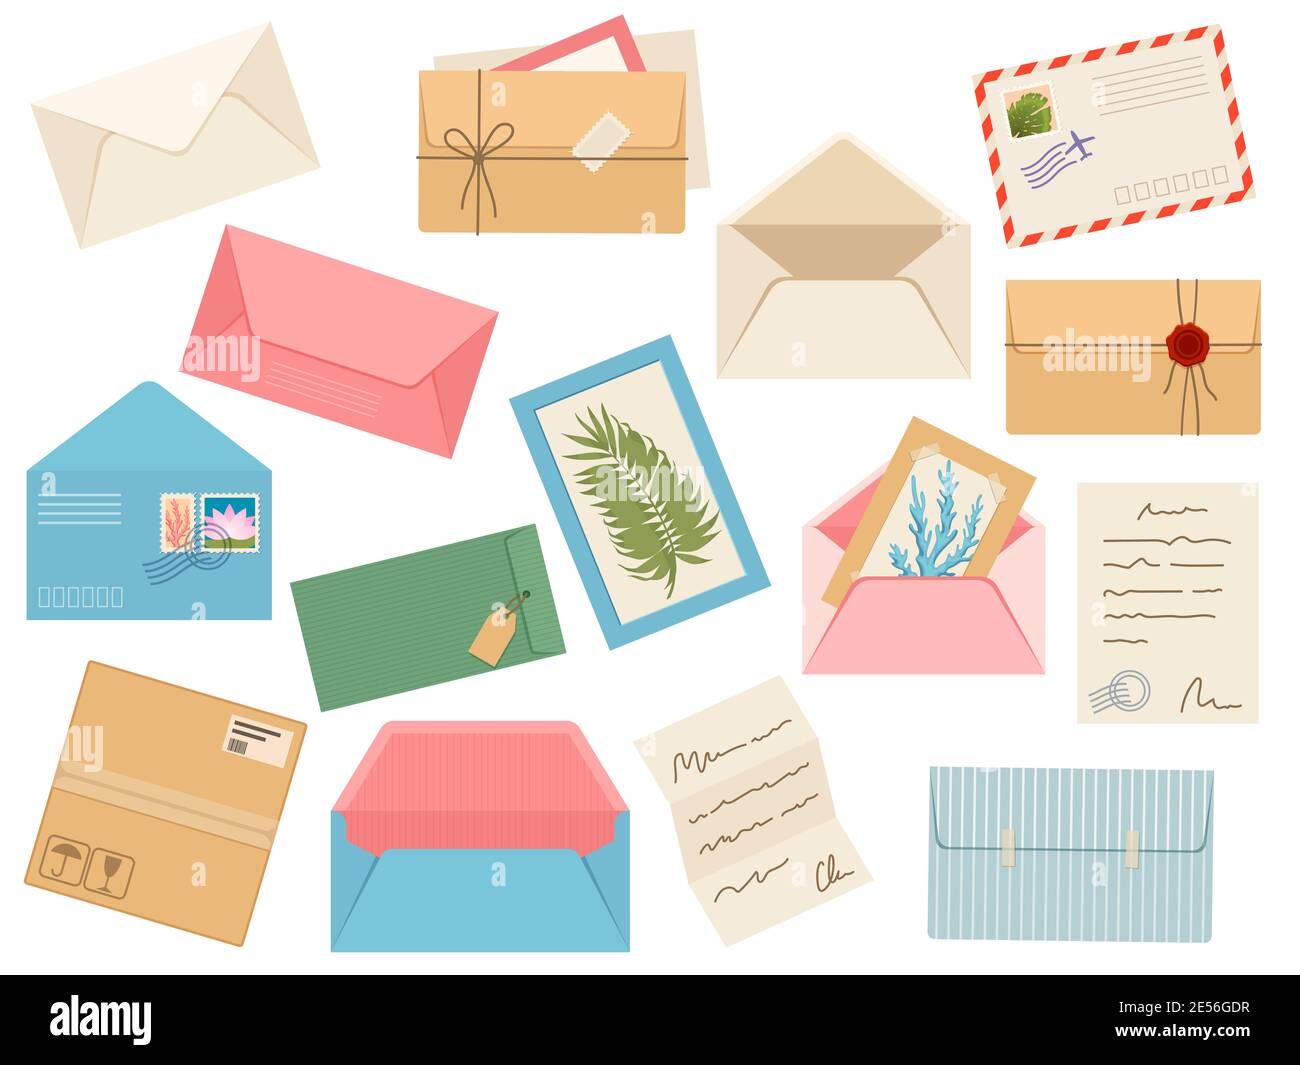 Briefe, Karten und Umschläge. Postkarte, Papierpost mit Poststempel, Wachsversiegelung und Briefmarke, Notiz und offenen handgemachten Umschlag, Vektor-Set Stock Vektor